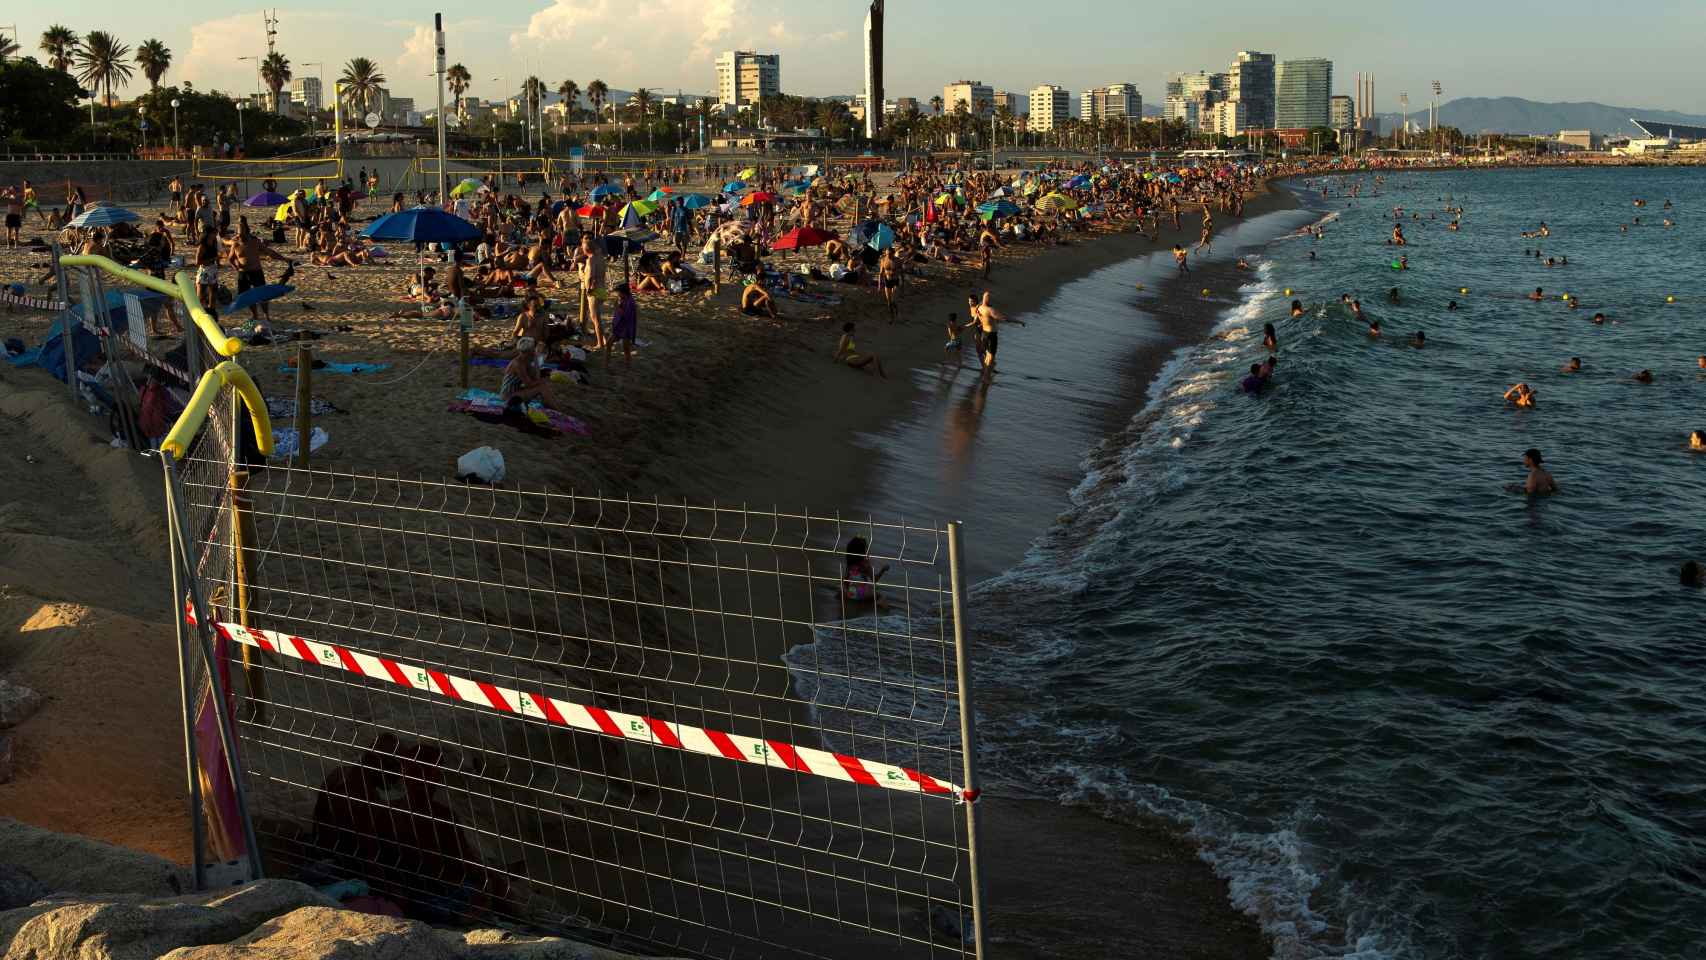 Unas vallas delimitan el acceso a una playa de Barcelona tras alcanzarse el máximo del aforo permitido.